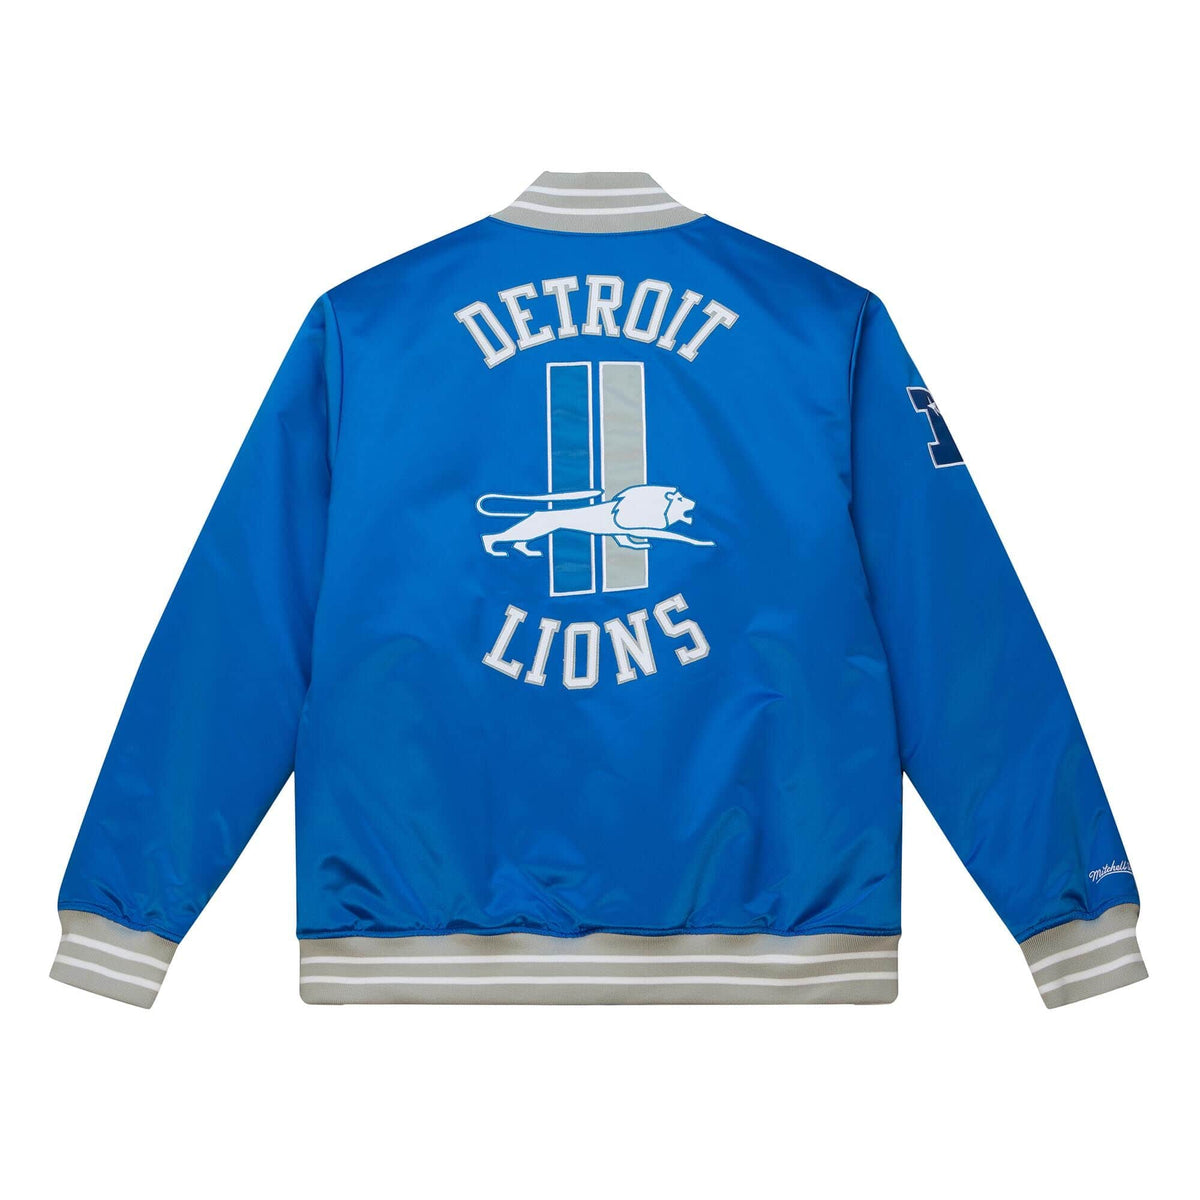 Detroit Tigers V-Neck Pullover Jacket - Vintage Detroit Collection